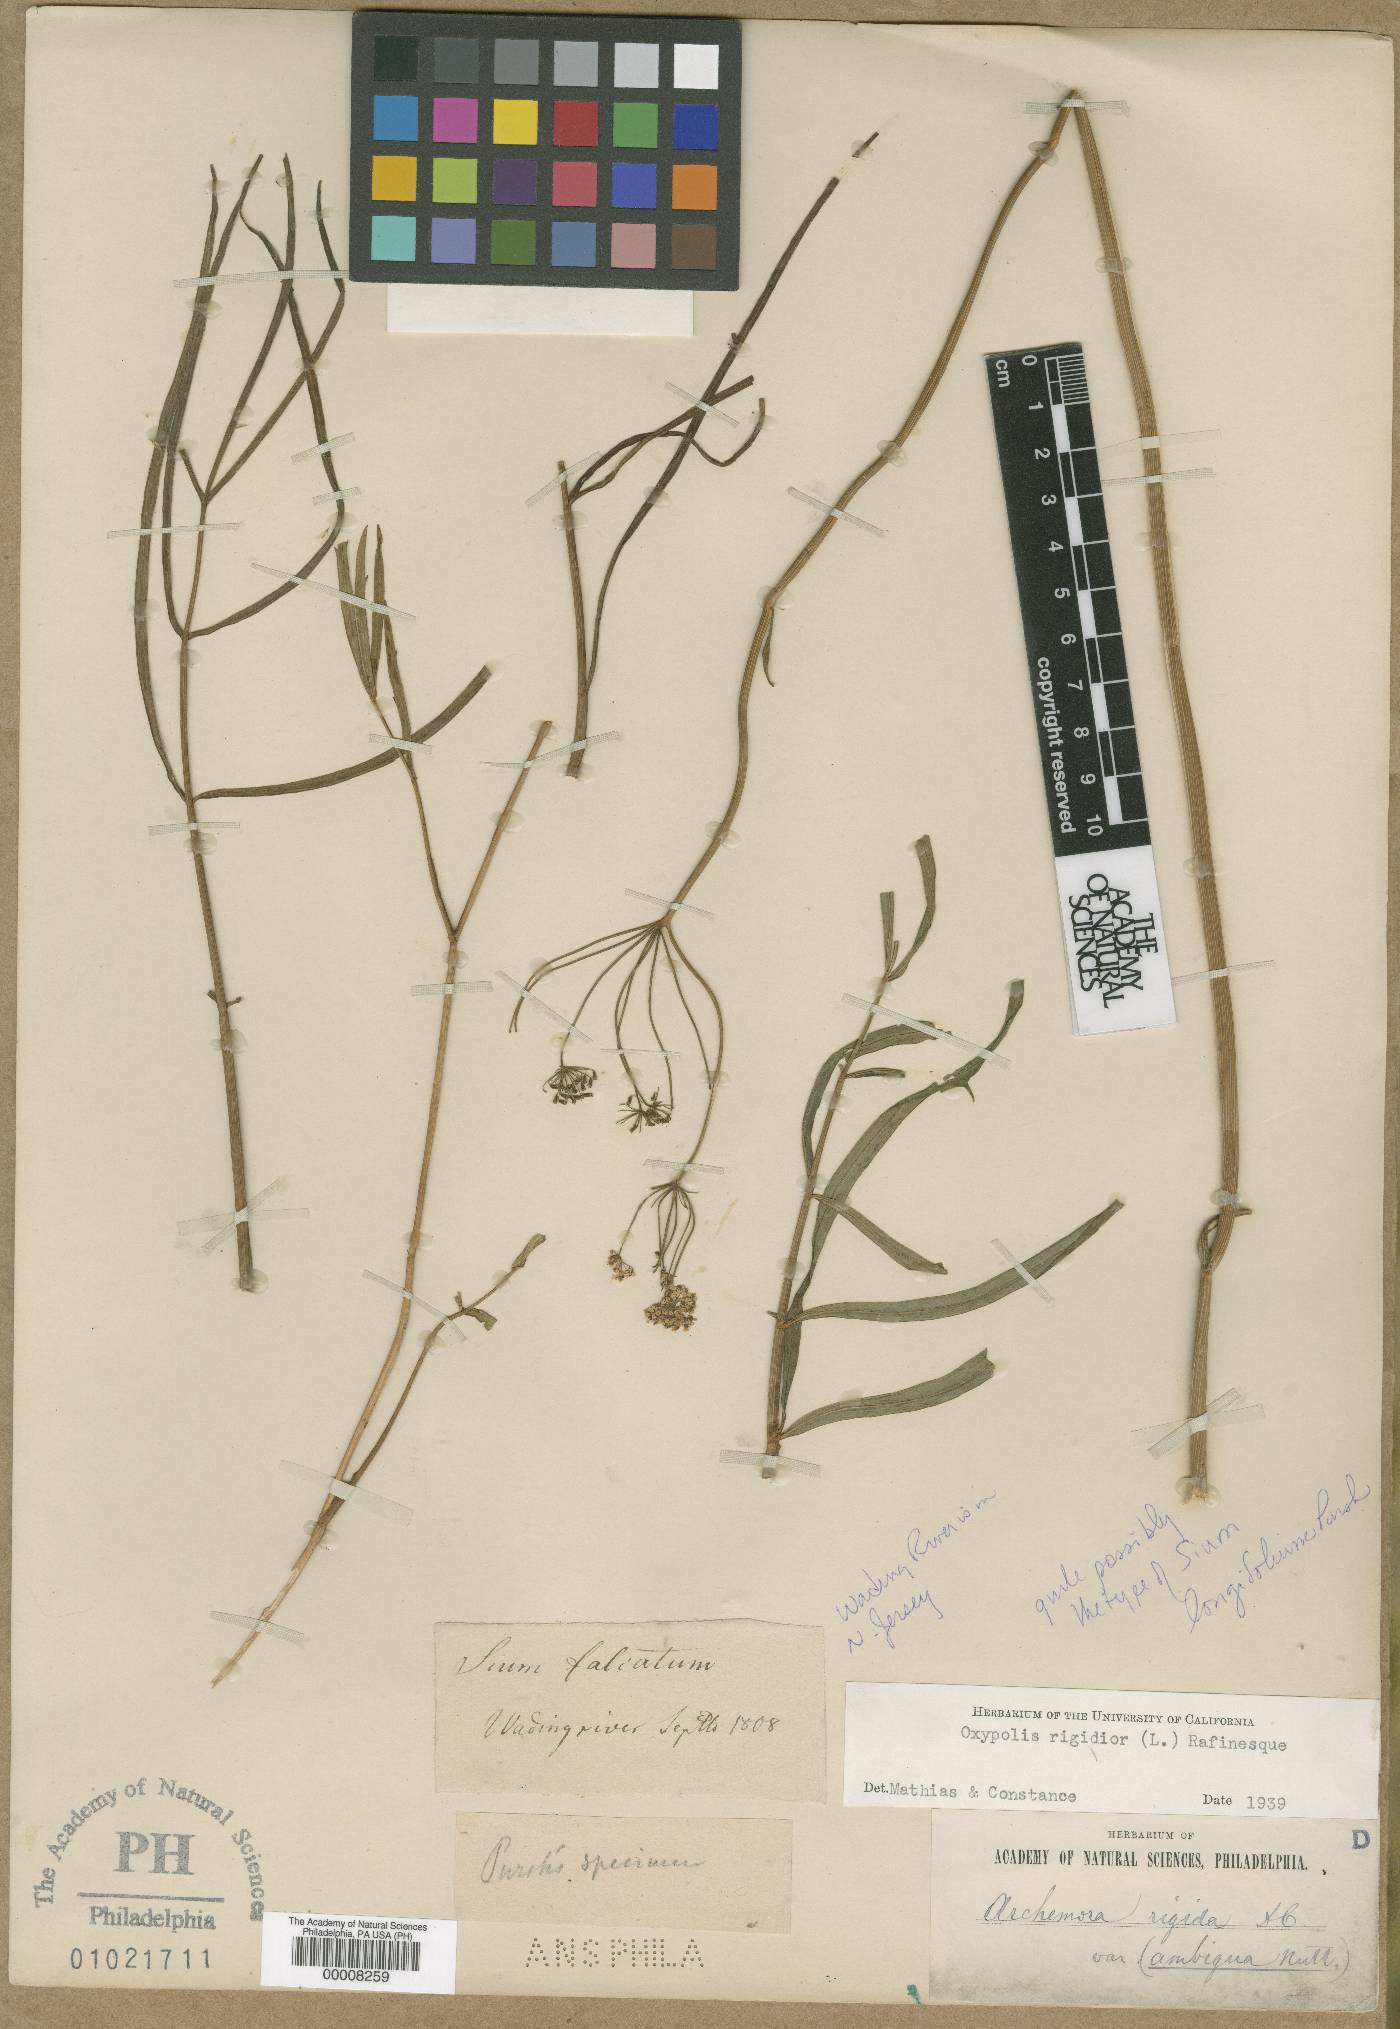 Falcaria vulgaris image